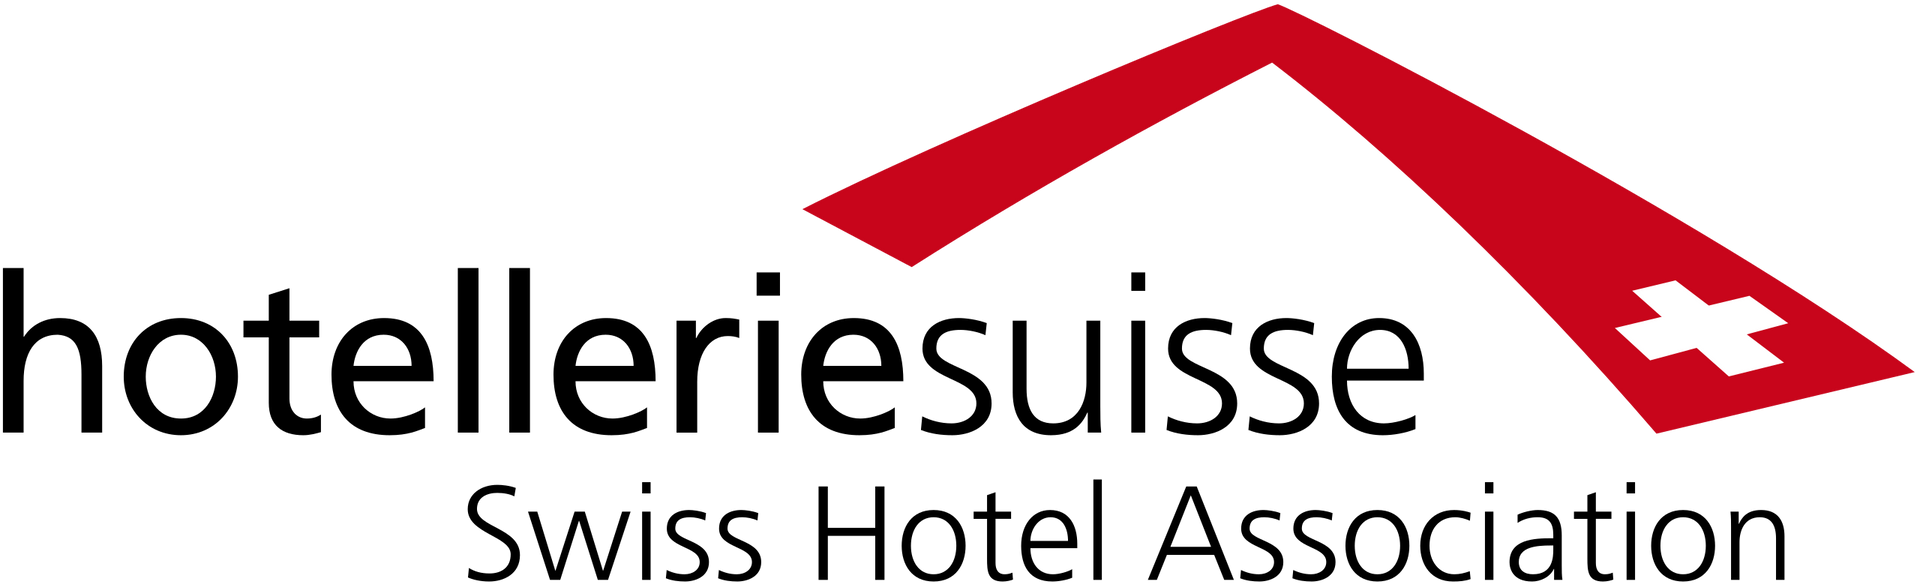 hotellerie-suisse-logo